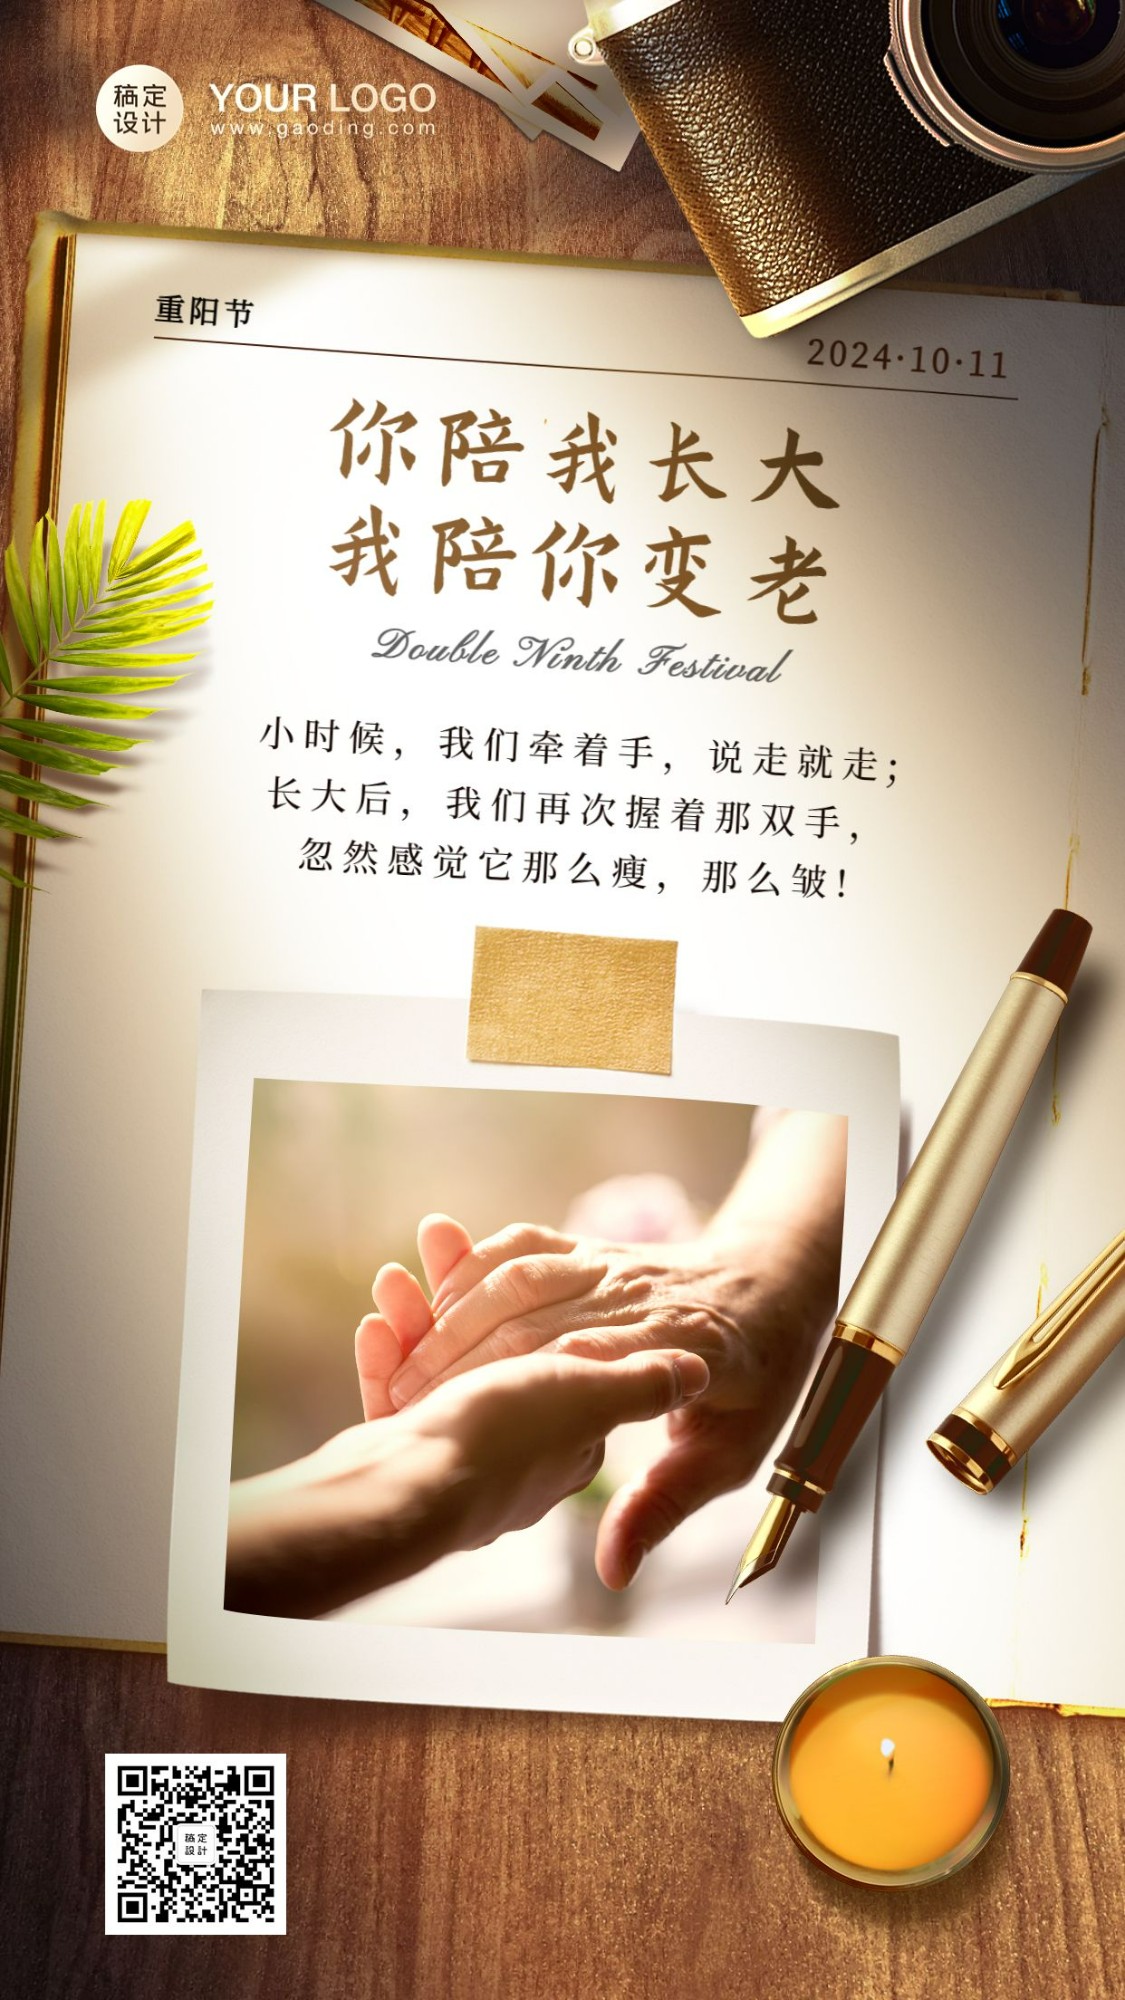 重阳节祝福温情文案实景合成系列手机海报2预览效果